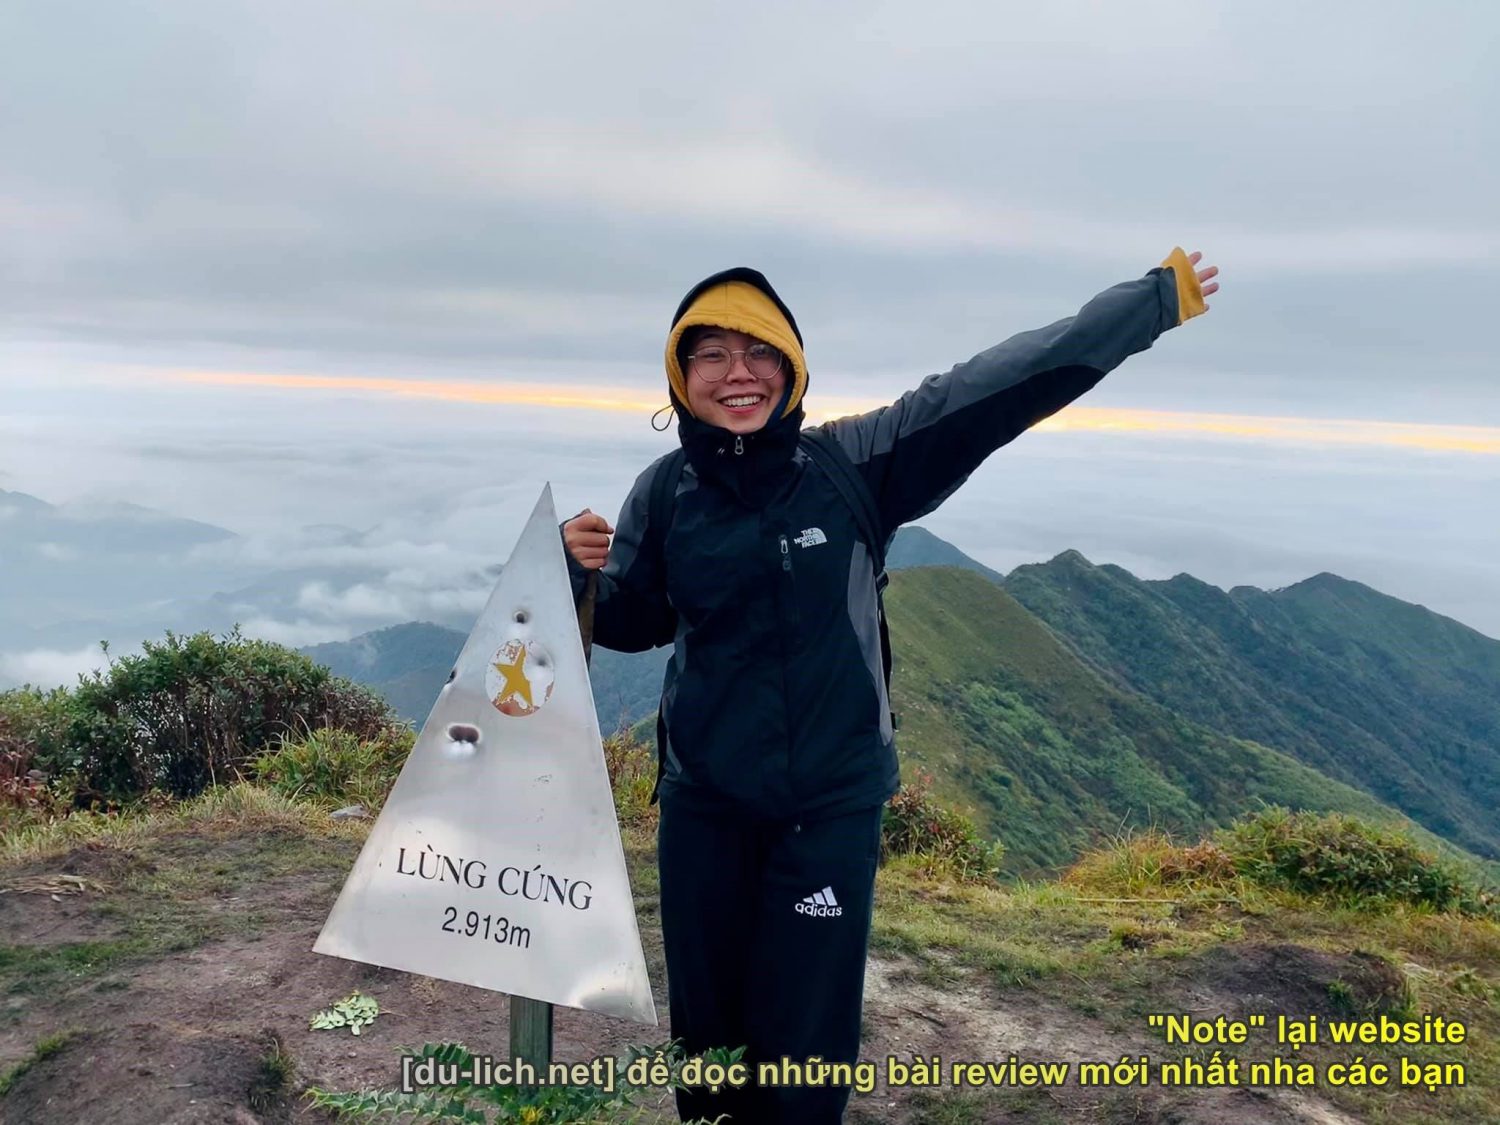 Review kinh nghiệm trekking đỉnh Lùng Cúng ở Mù Cang Chải (Yên Bái)